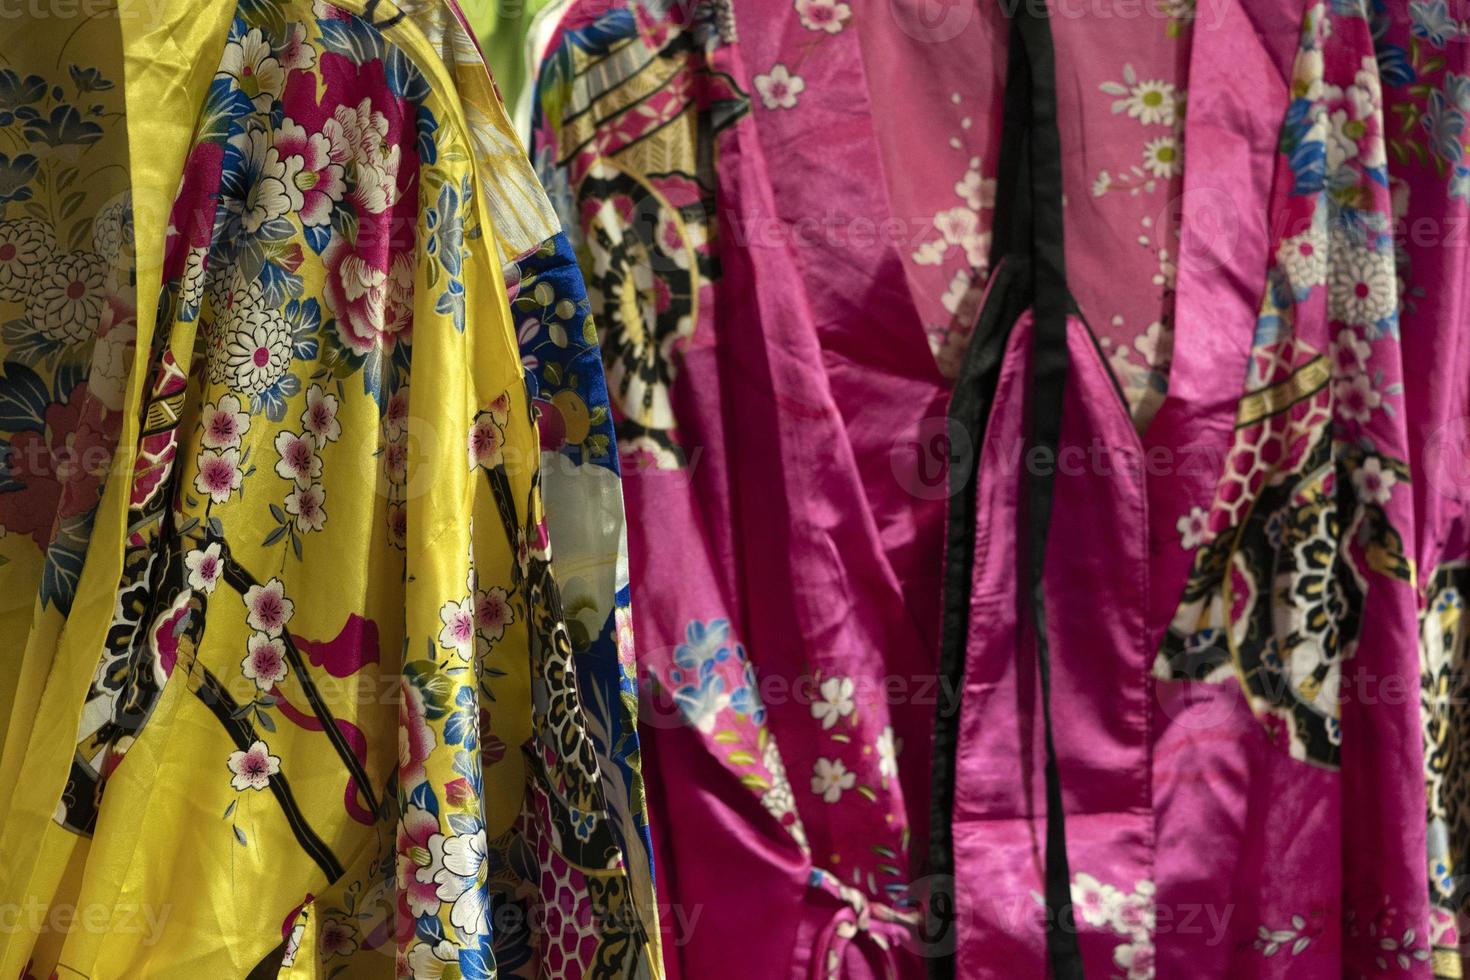 många japansk kimono klänning på de marknadsföra foto